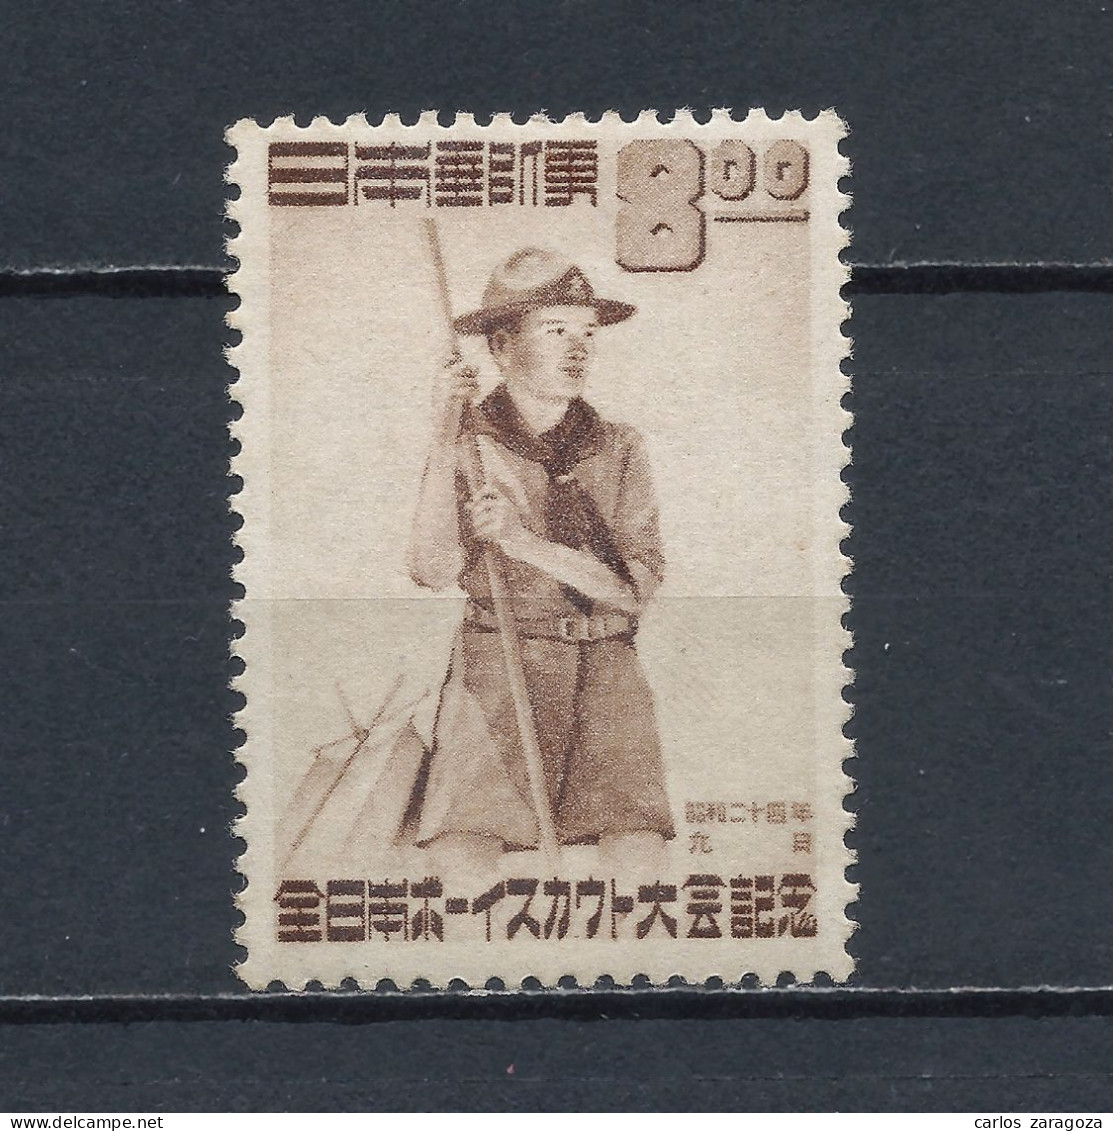 JAPON 1949—SCOUT, JAMBOREE EN TOKIO. 434—SELLO NUEVO (*) MH STAMP 467, TIMBRE NEUF - Nuovi